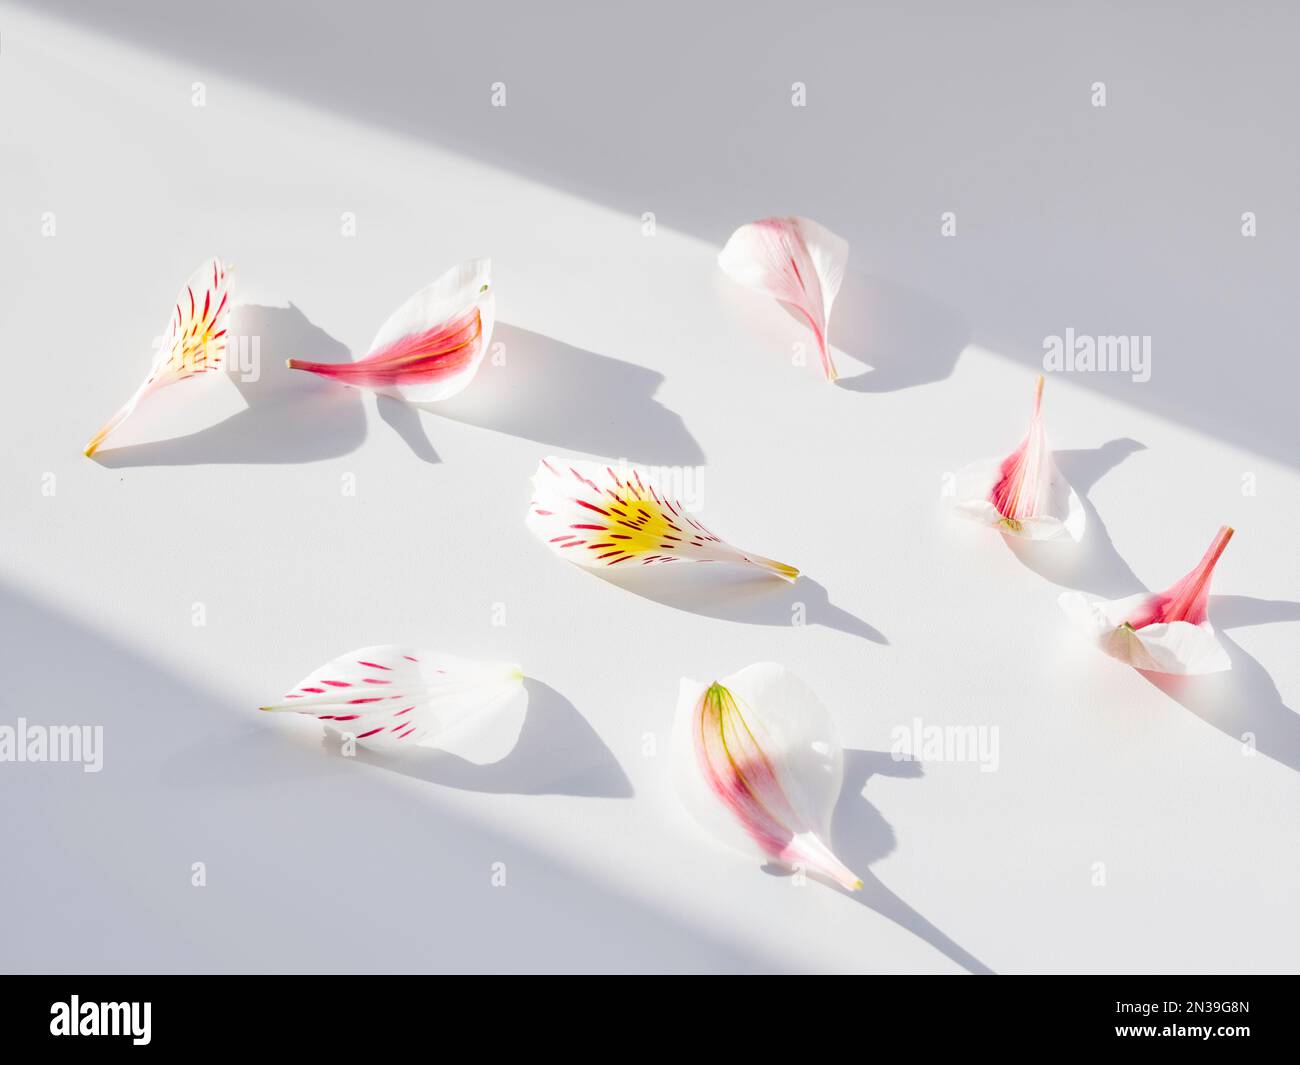 Top ivew über Alstroemeria-Blüten auf weißem Hintergrund. Geometrischer Hintergrund mit zerbrechlichen Blütenblättern, Licht und Schatten. Romantischer Hintergrund. Stockfoto